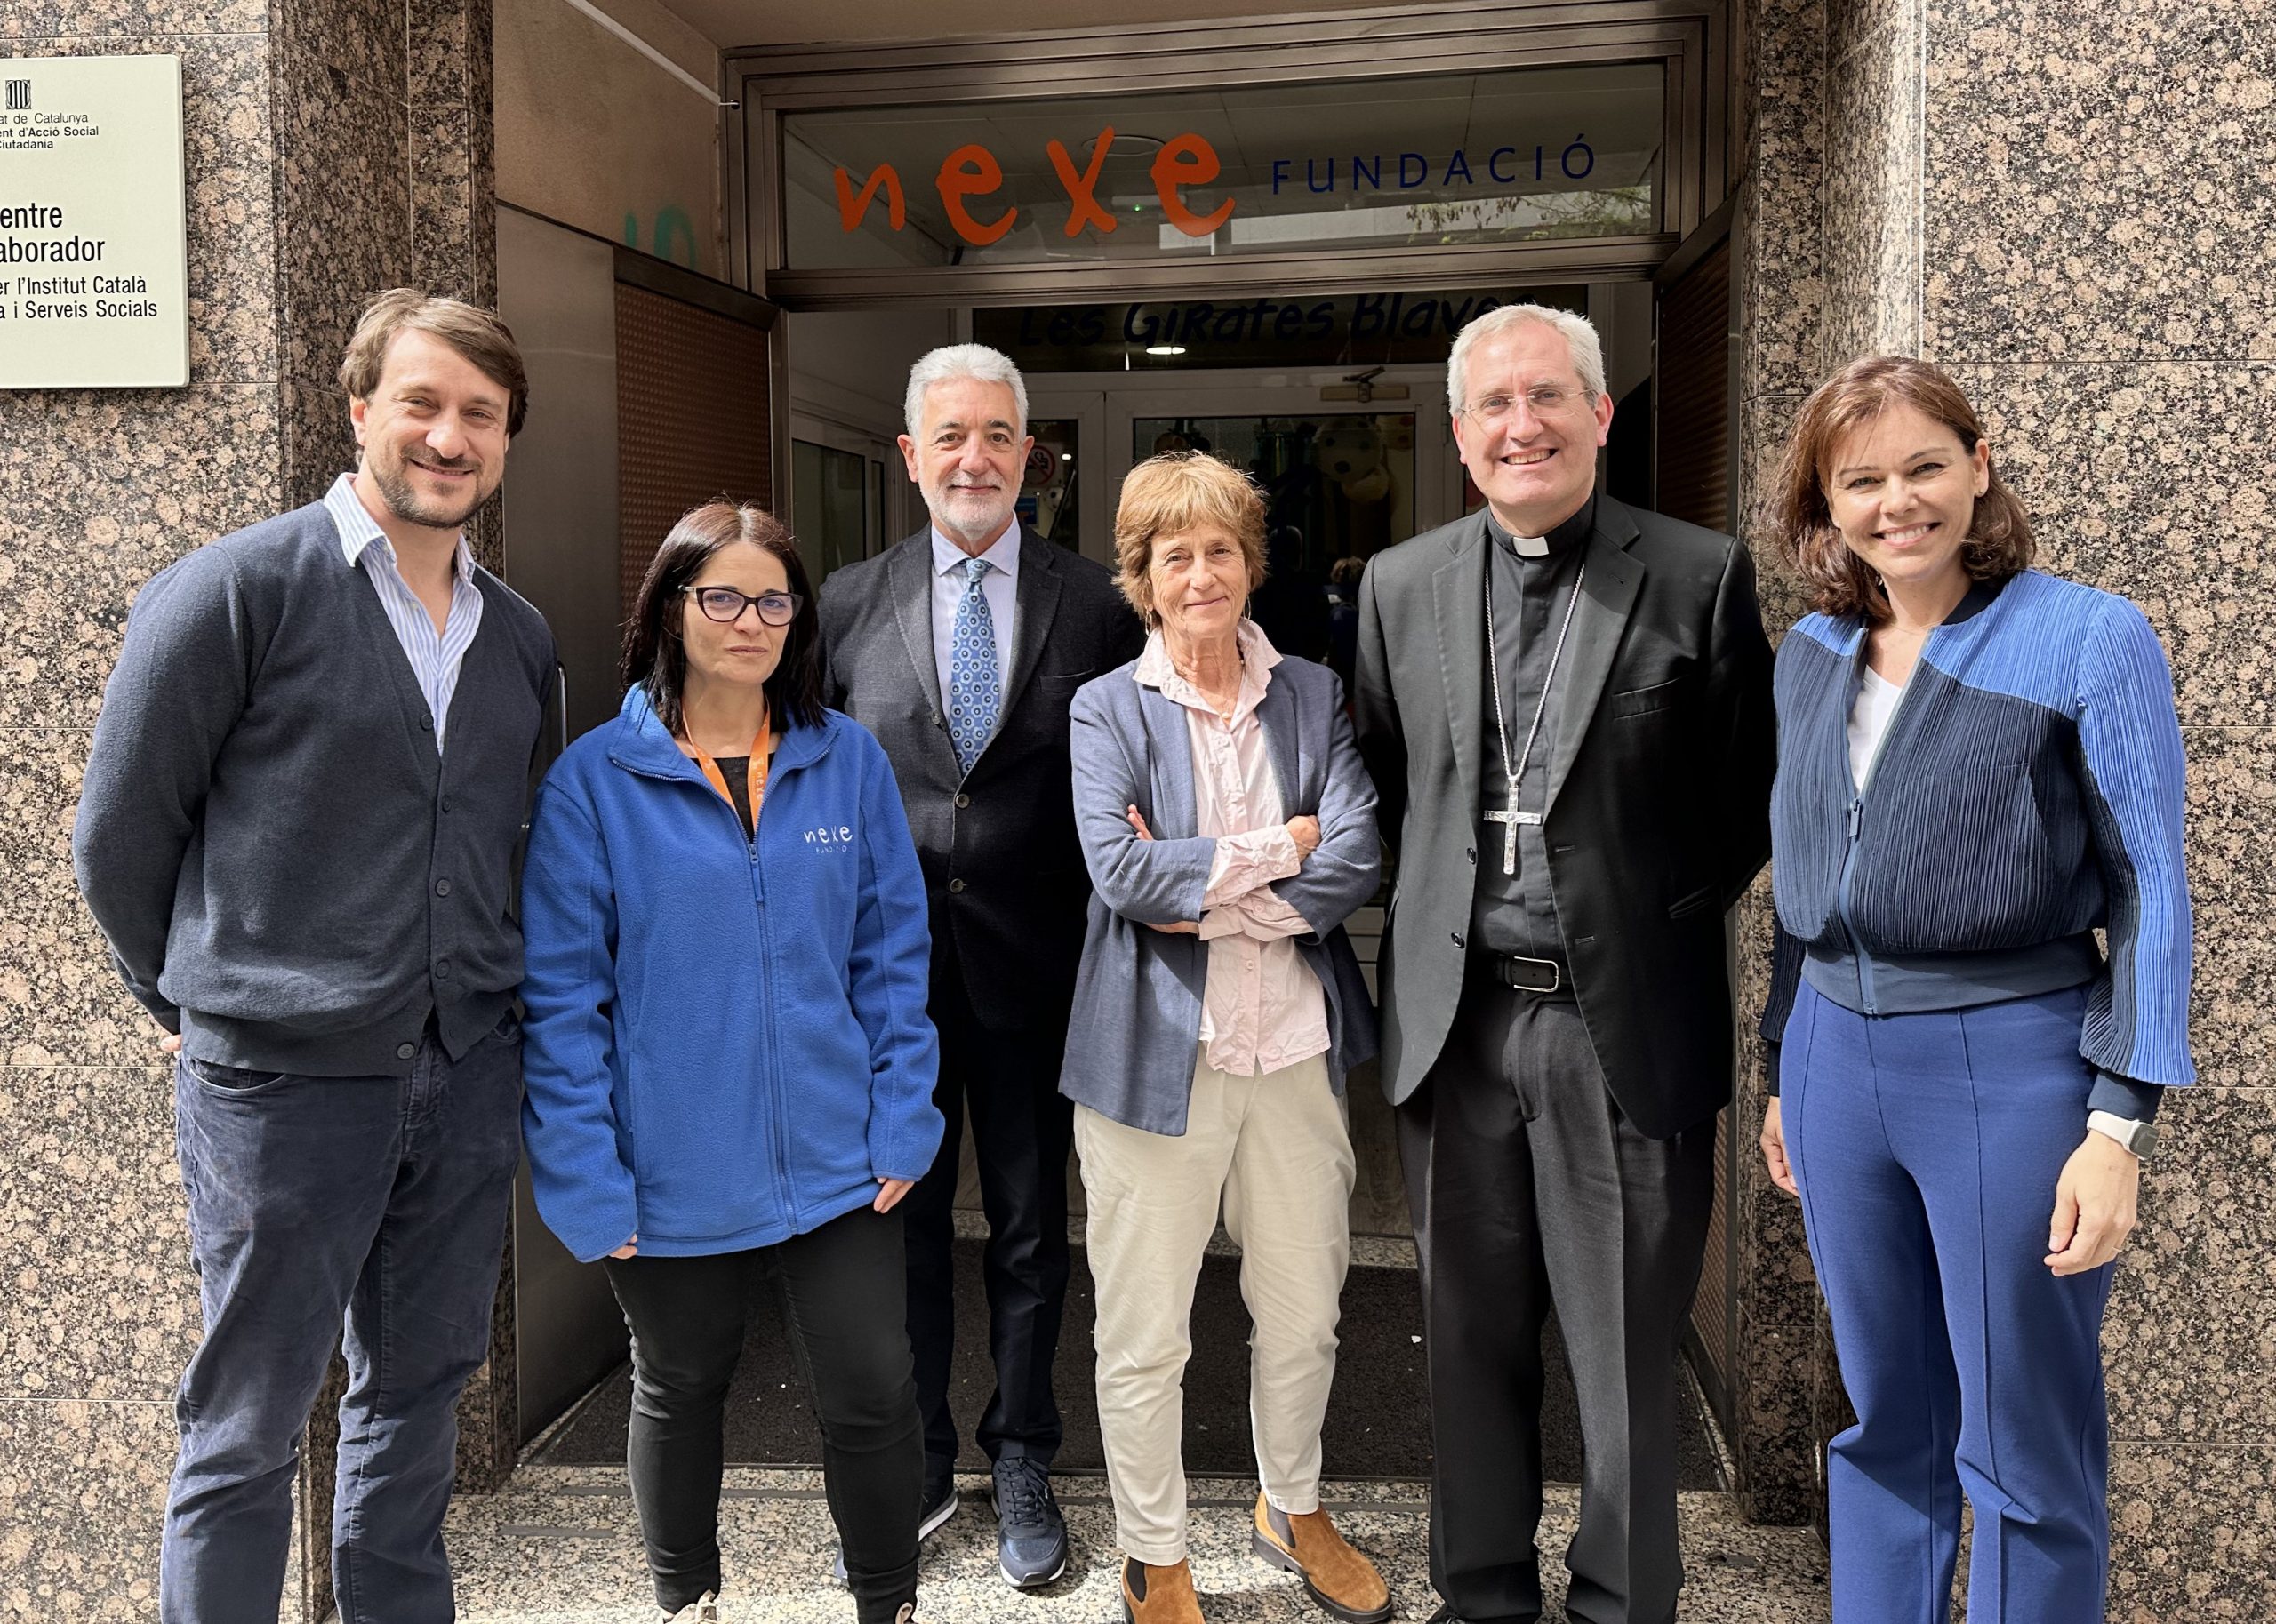 Nexe Fundació rep la visita del Bisbe auxiliar de Barcelona